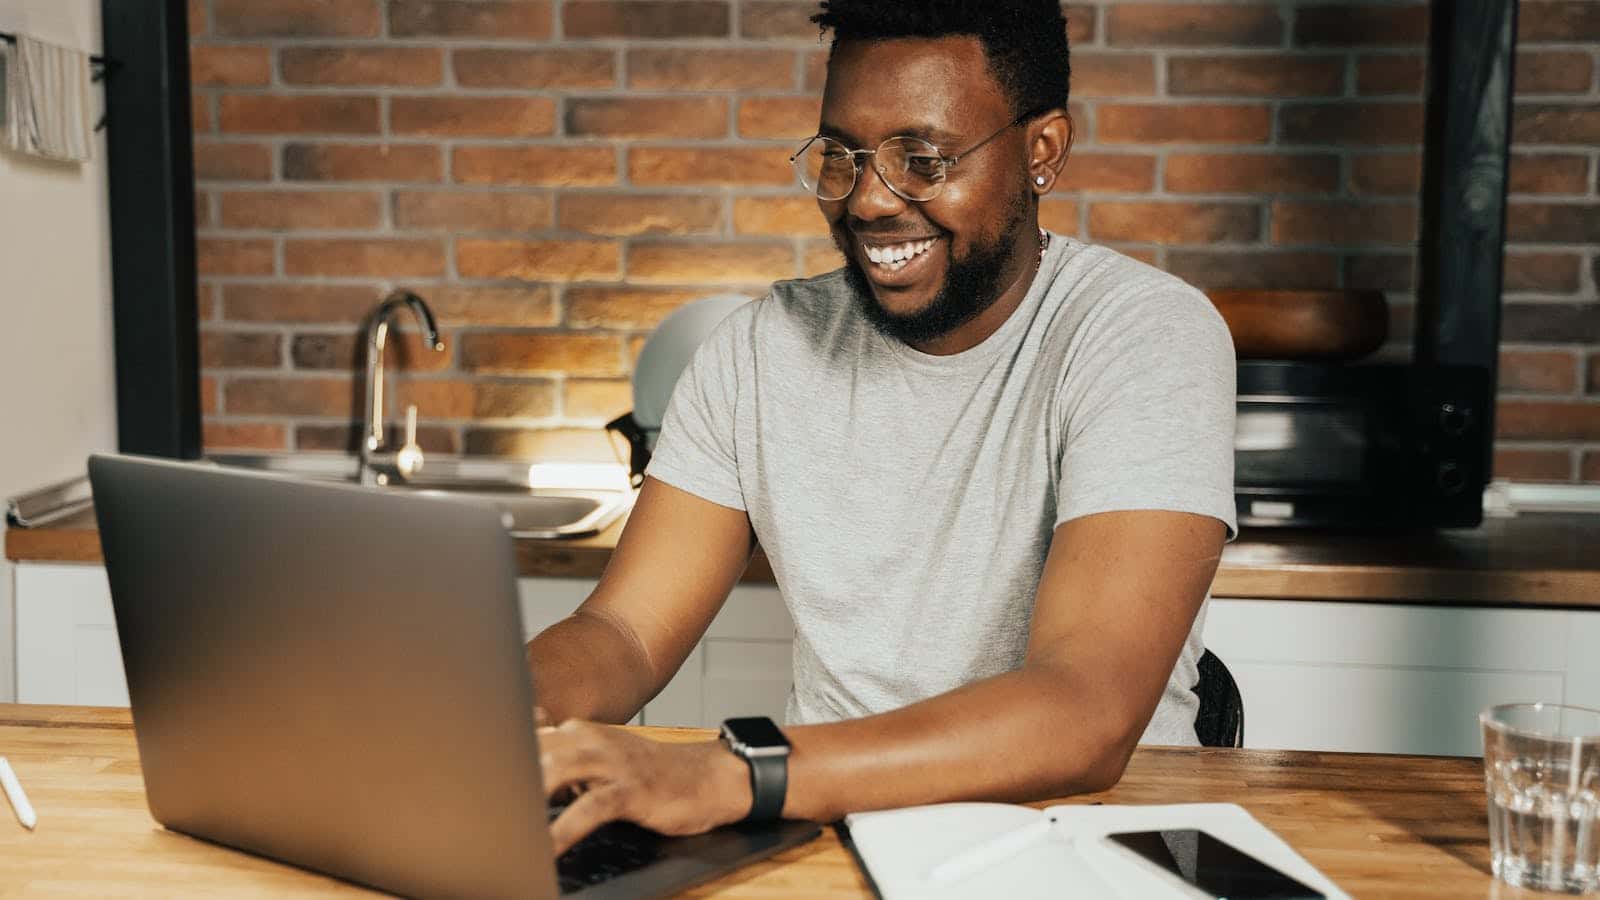 Ein Mann sitzt am Laptop und lacht.